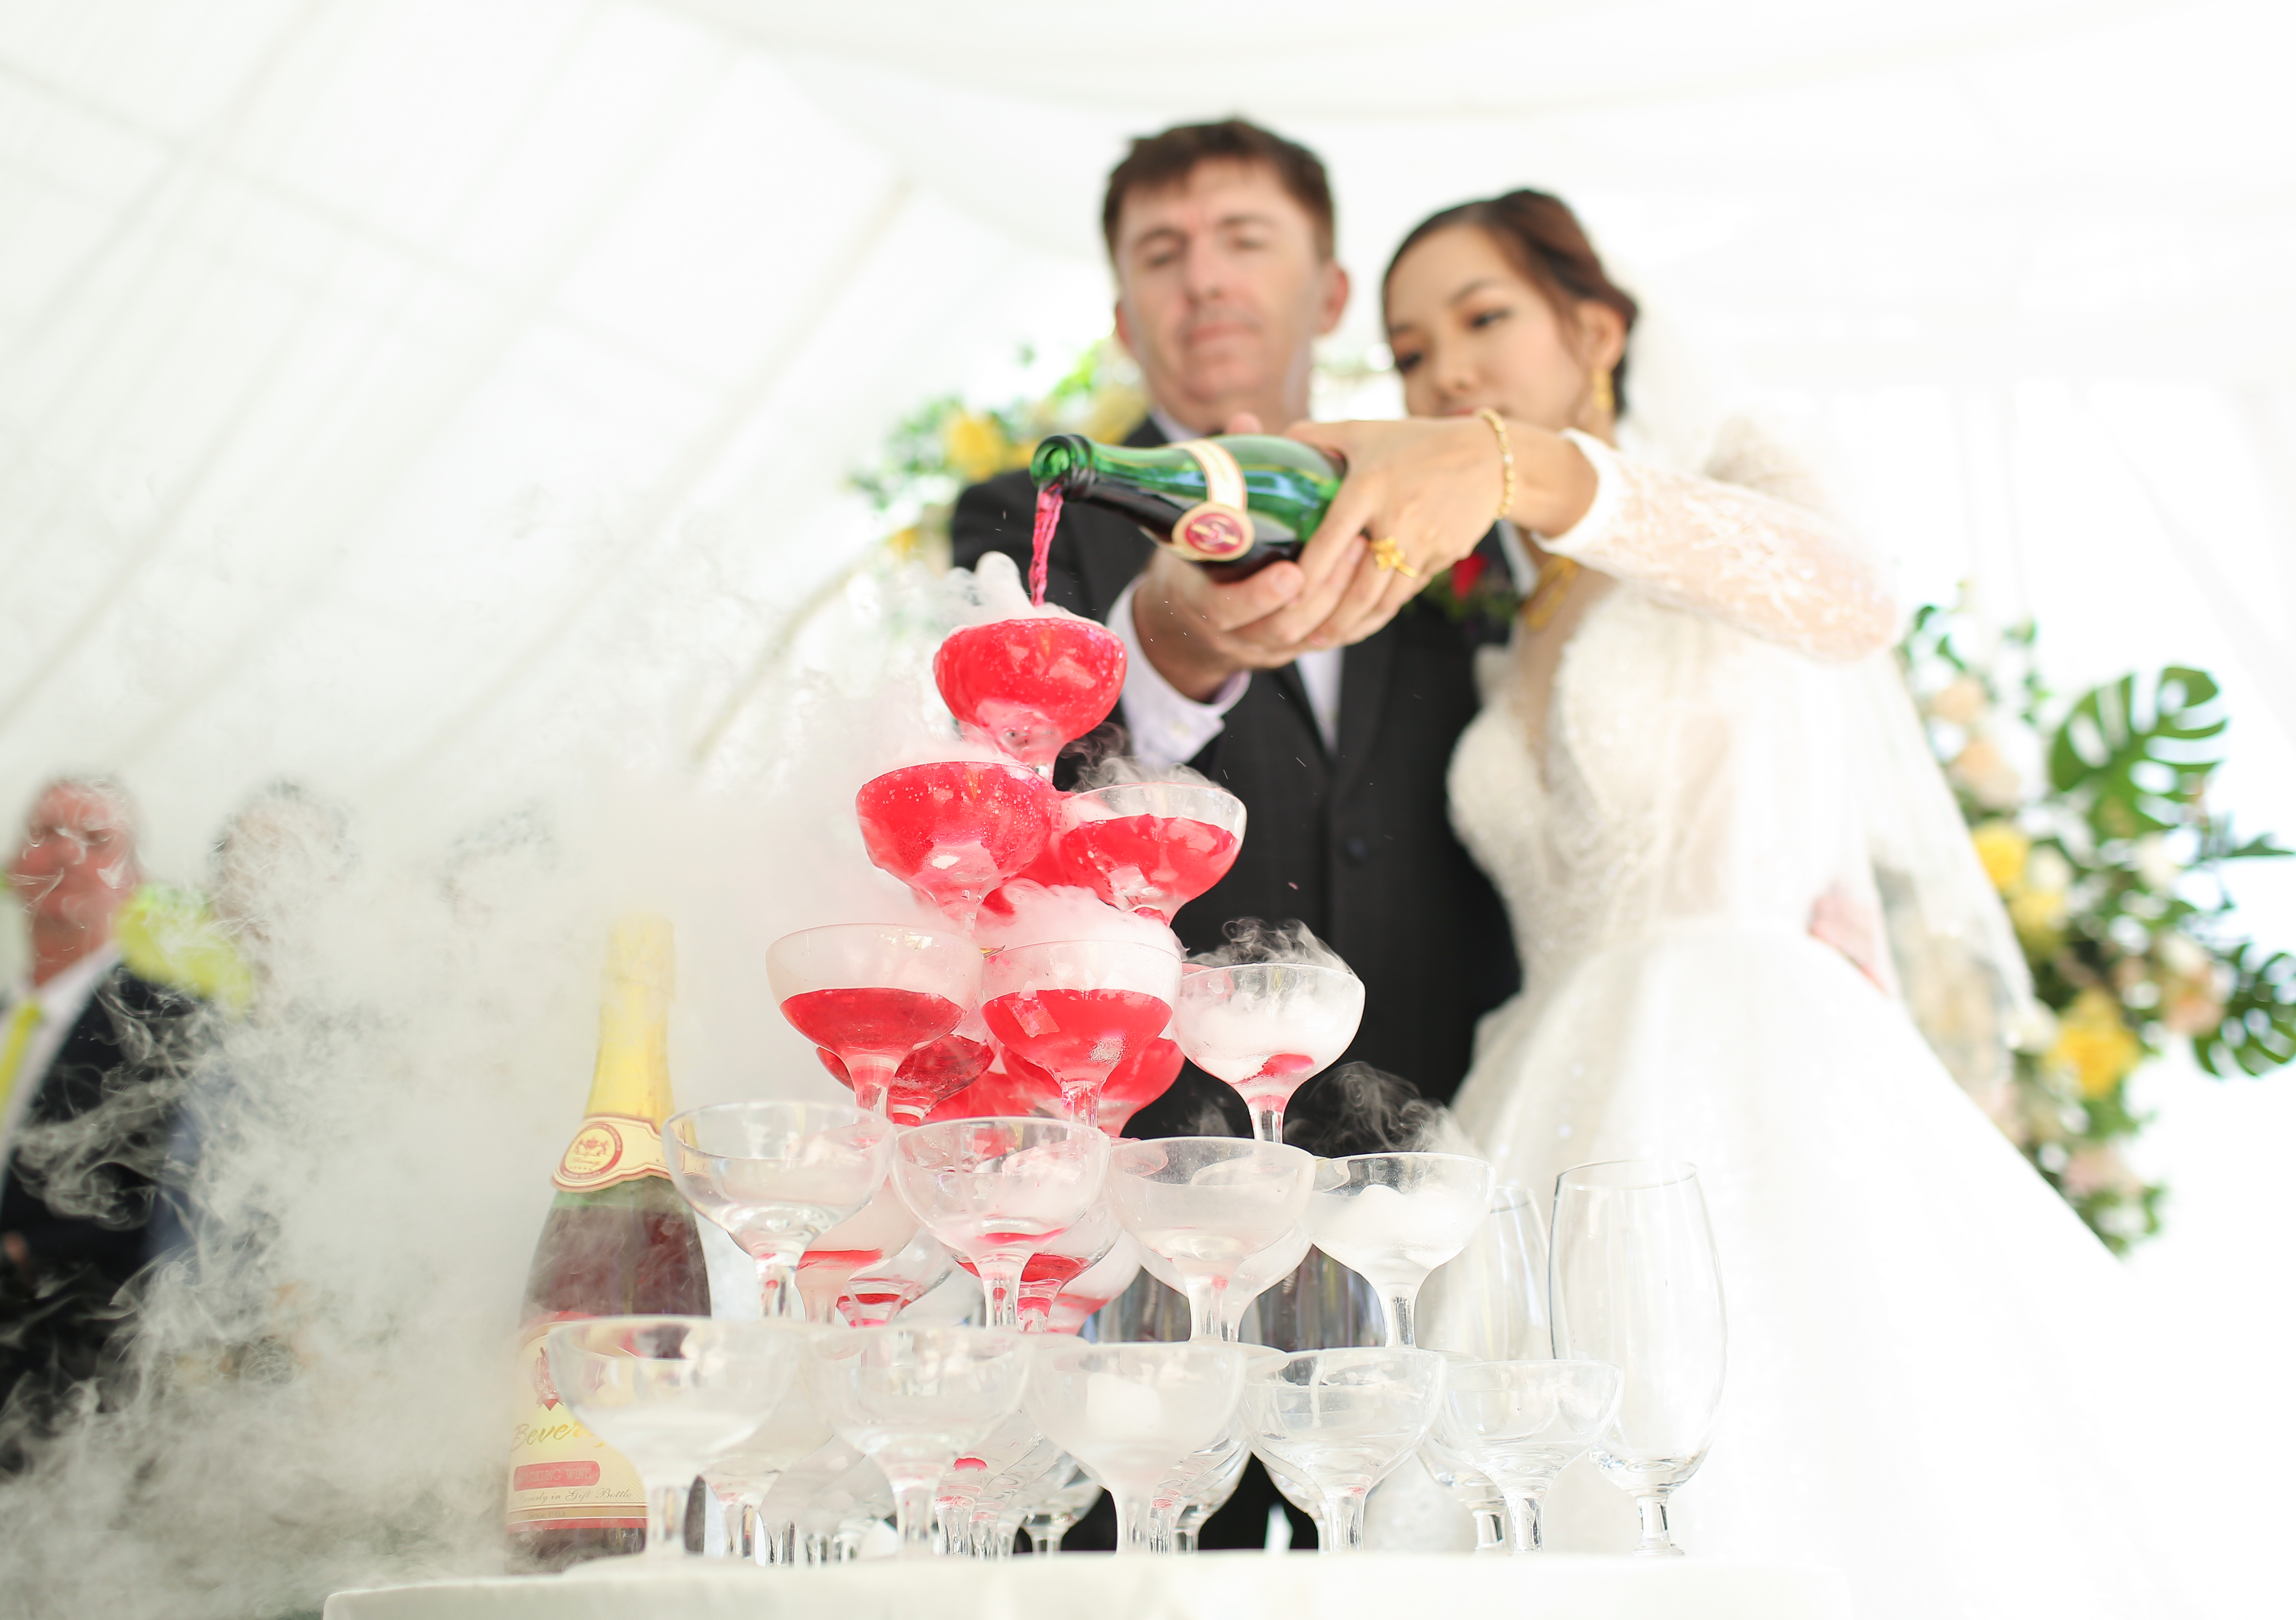 Рэй Кушерт и его жена наливают шампанское в пирамиду бокалов для вина на своей свадьбе в провинции Бинь Зыонг, Вьетнам, в апреле 2021 года. Фото любезно предоставлено Рэем Кушертом